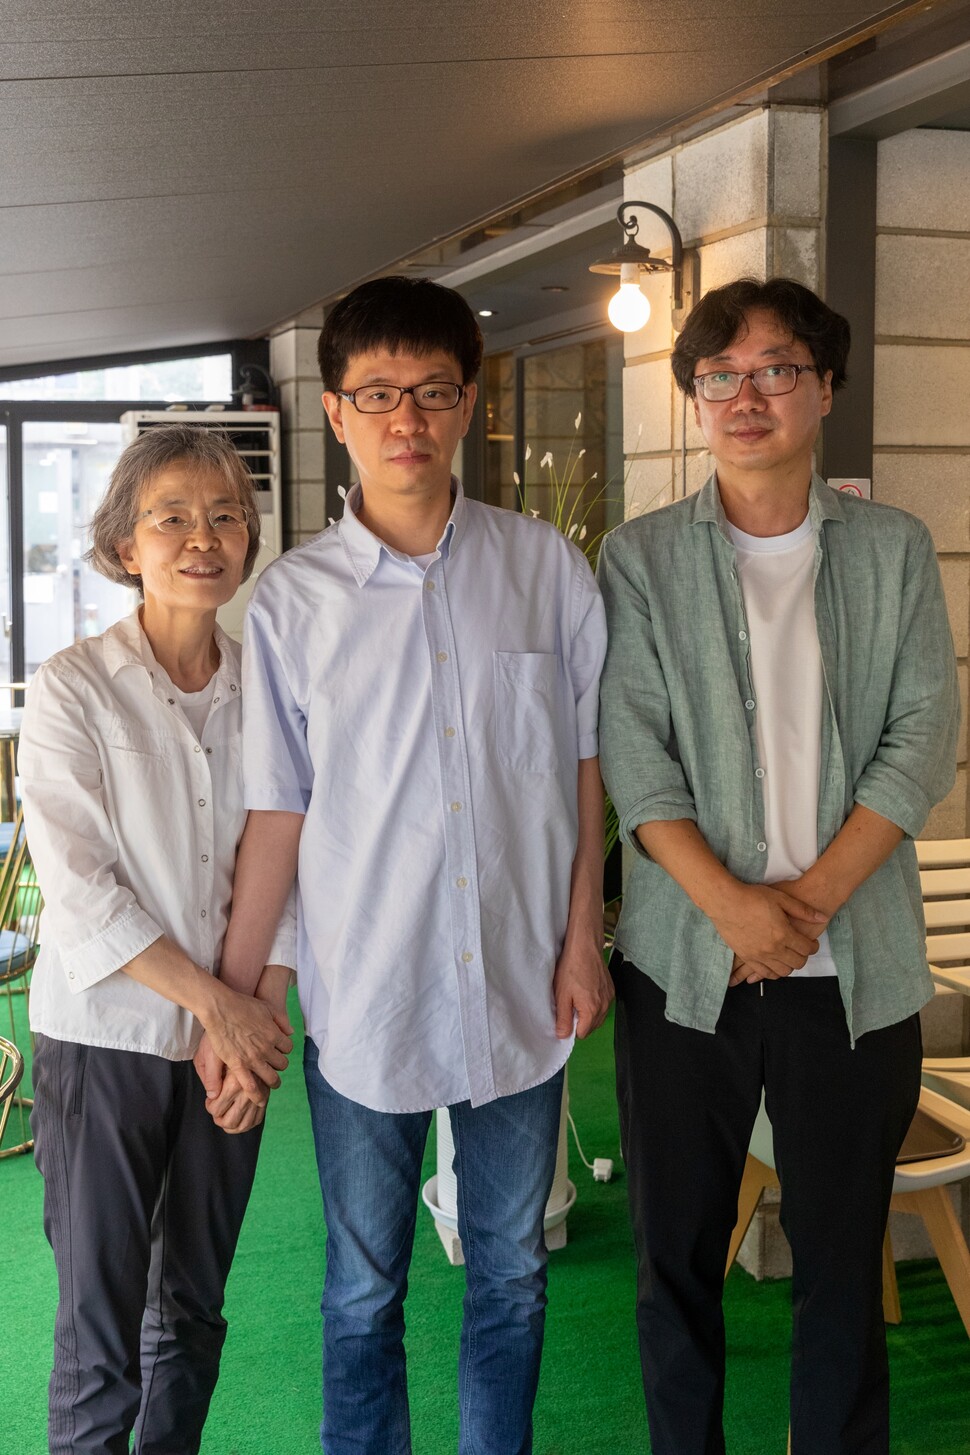 자폐 음악가를 다룬 다큐멘터리영화 <녹턴>의 주인공 은성호씨(가운데)와 어머니 손민서씨(왼쪽), 정관조 감독이 2022년 8월17일 서울 서초구의 한 카페에서 한자리에 섰다.